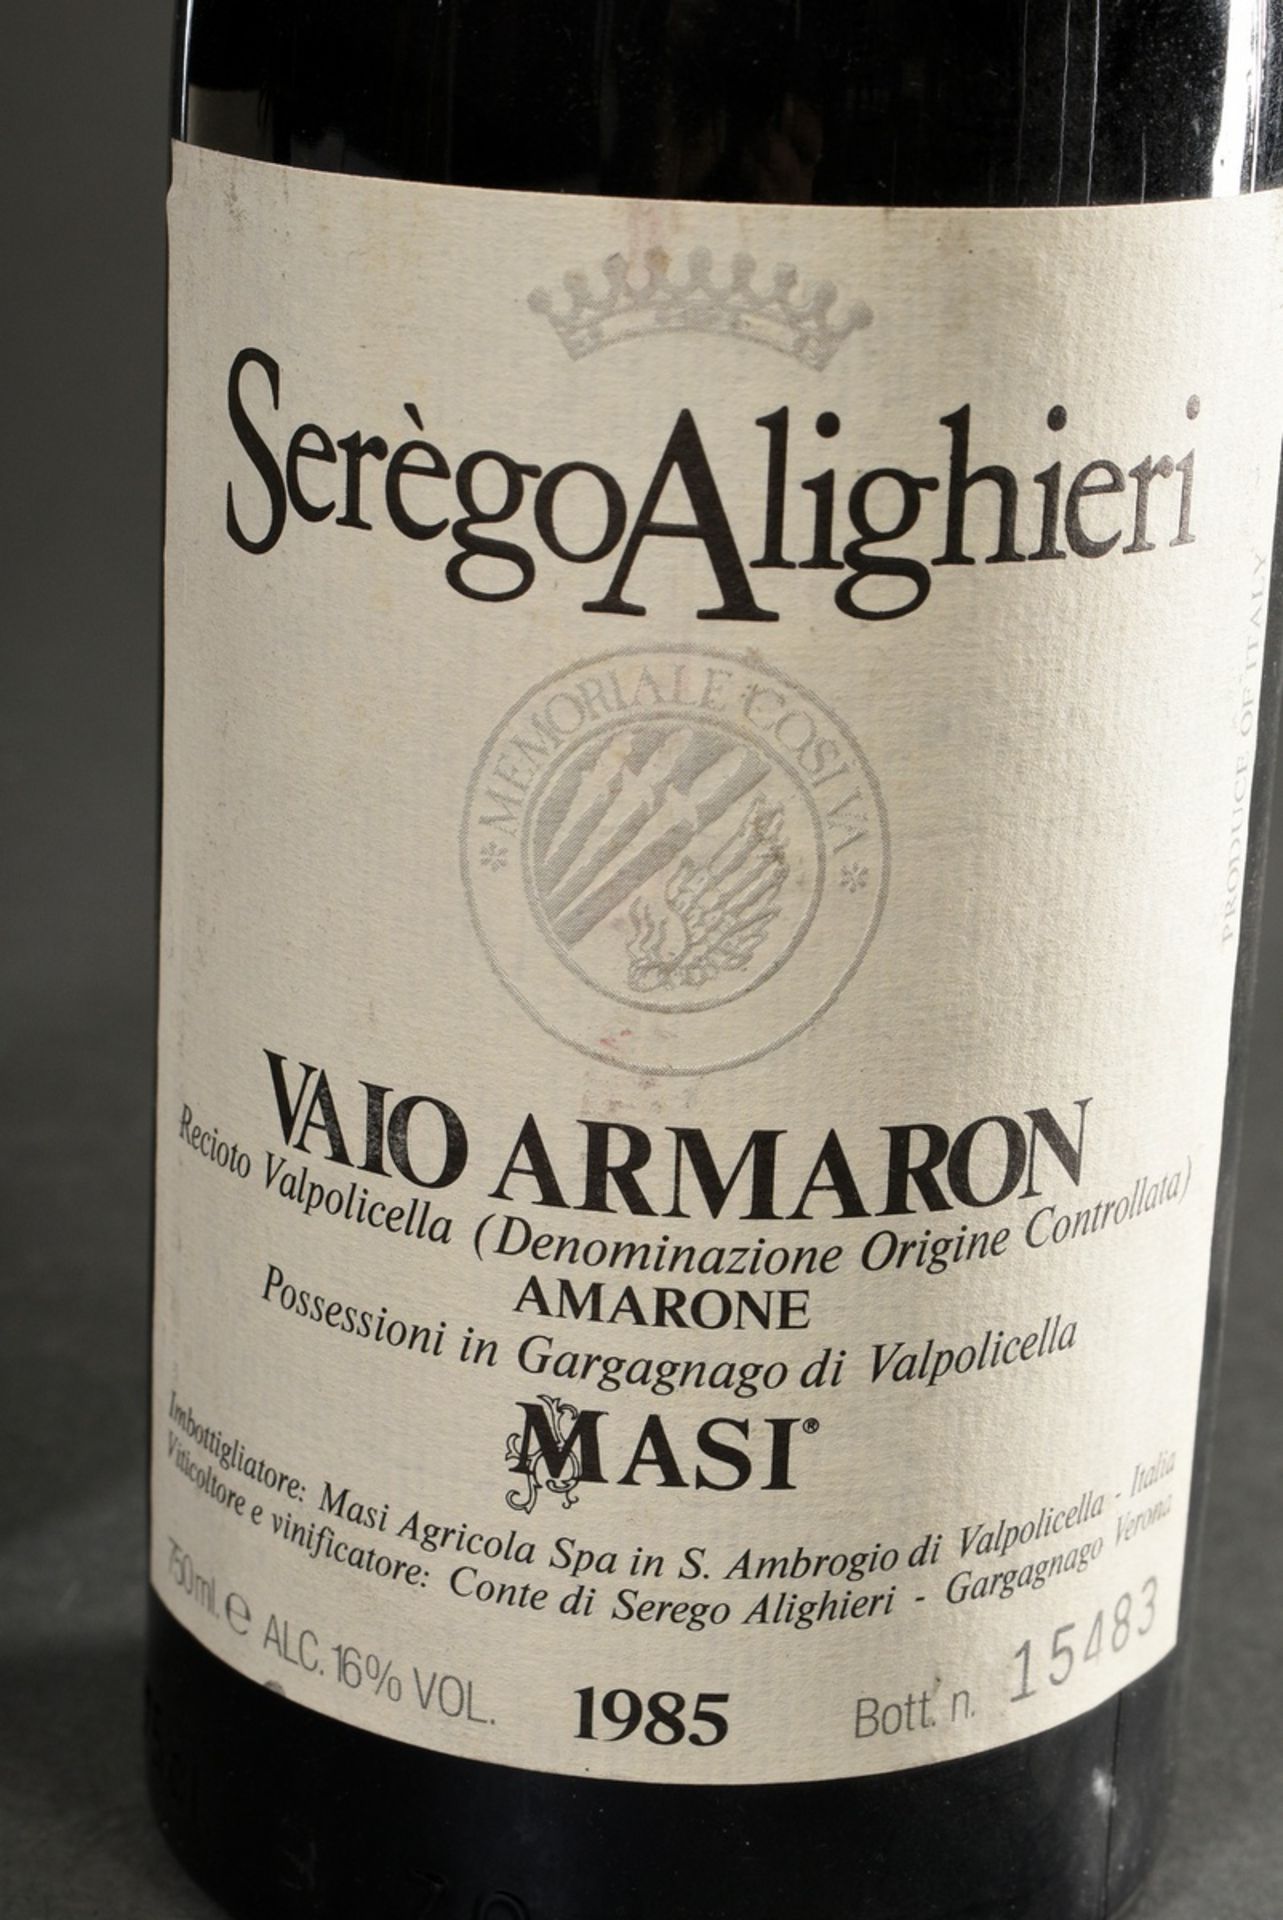 2 Flaschen 1985 Masi Serego Alighieri Vaio Armaron, Valpolicella DOC, Rotwein, Italien, 0,75l, hs - Bild 2 aus 4